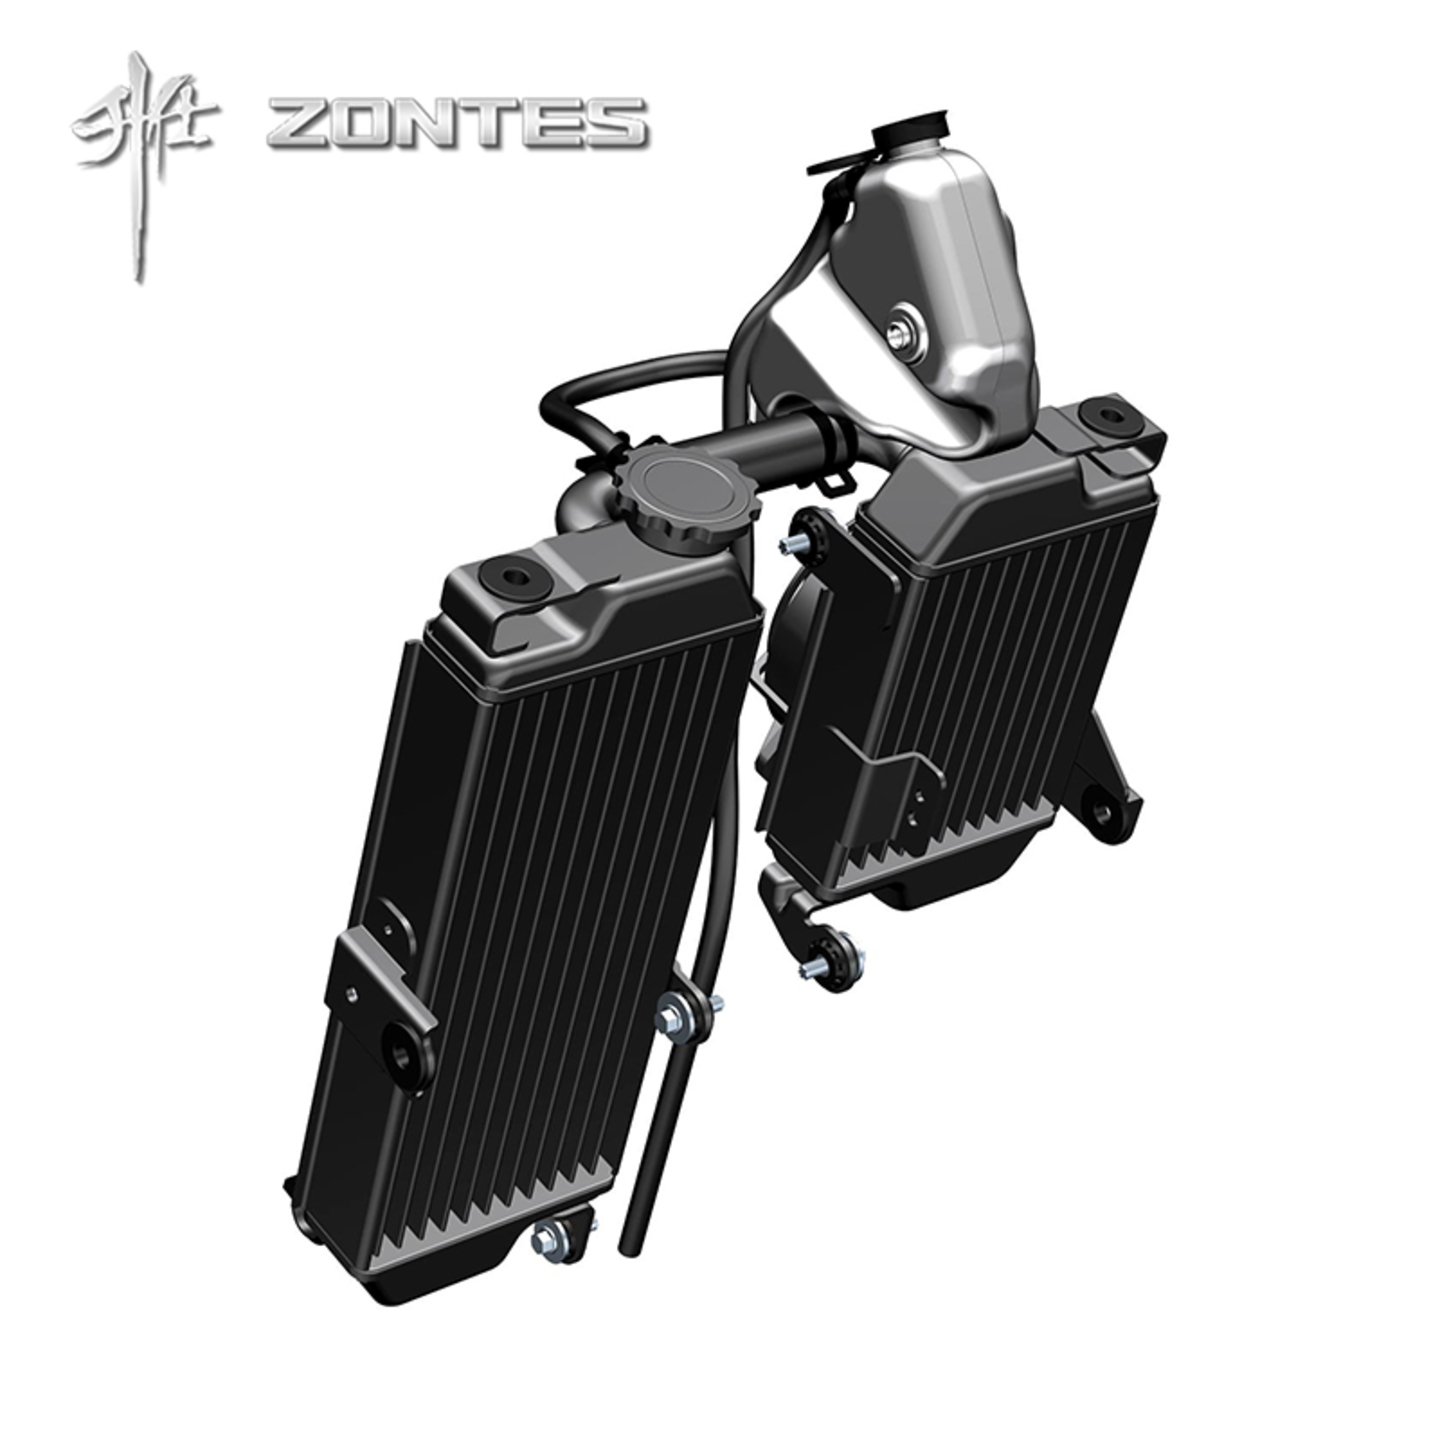 Zontes ZT310R 310R2 310R1 ZT310R1 ZT310R2 ZT310GP ZT310X ZT310-X ZT310X2 310X 310X2 310GP ZT310T ZT310T2 ZT310-T ADV 310T2 310 radiator left right system reservoir tank fan assembly